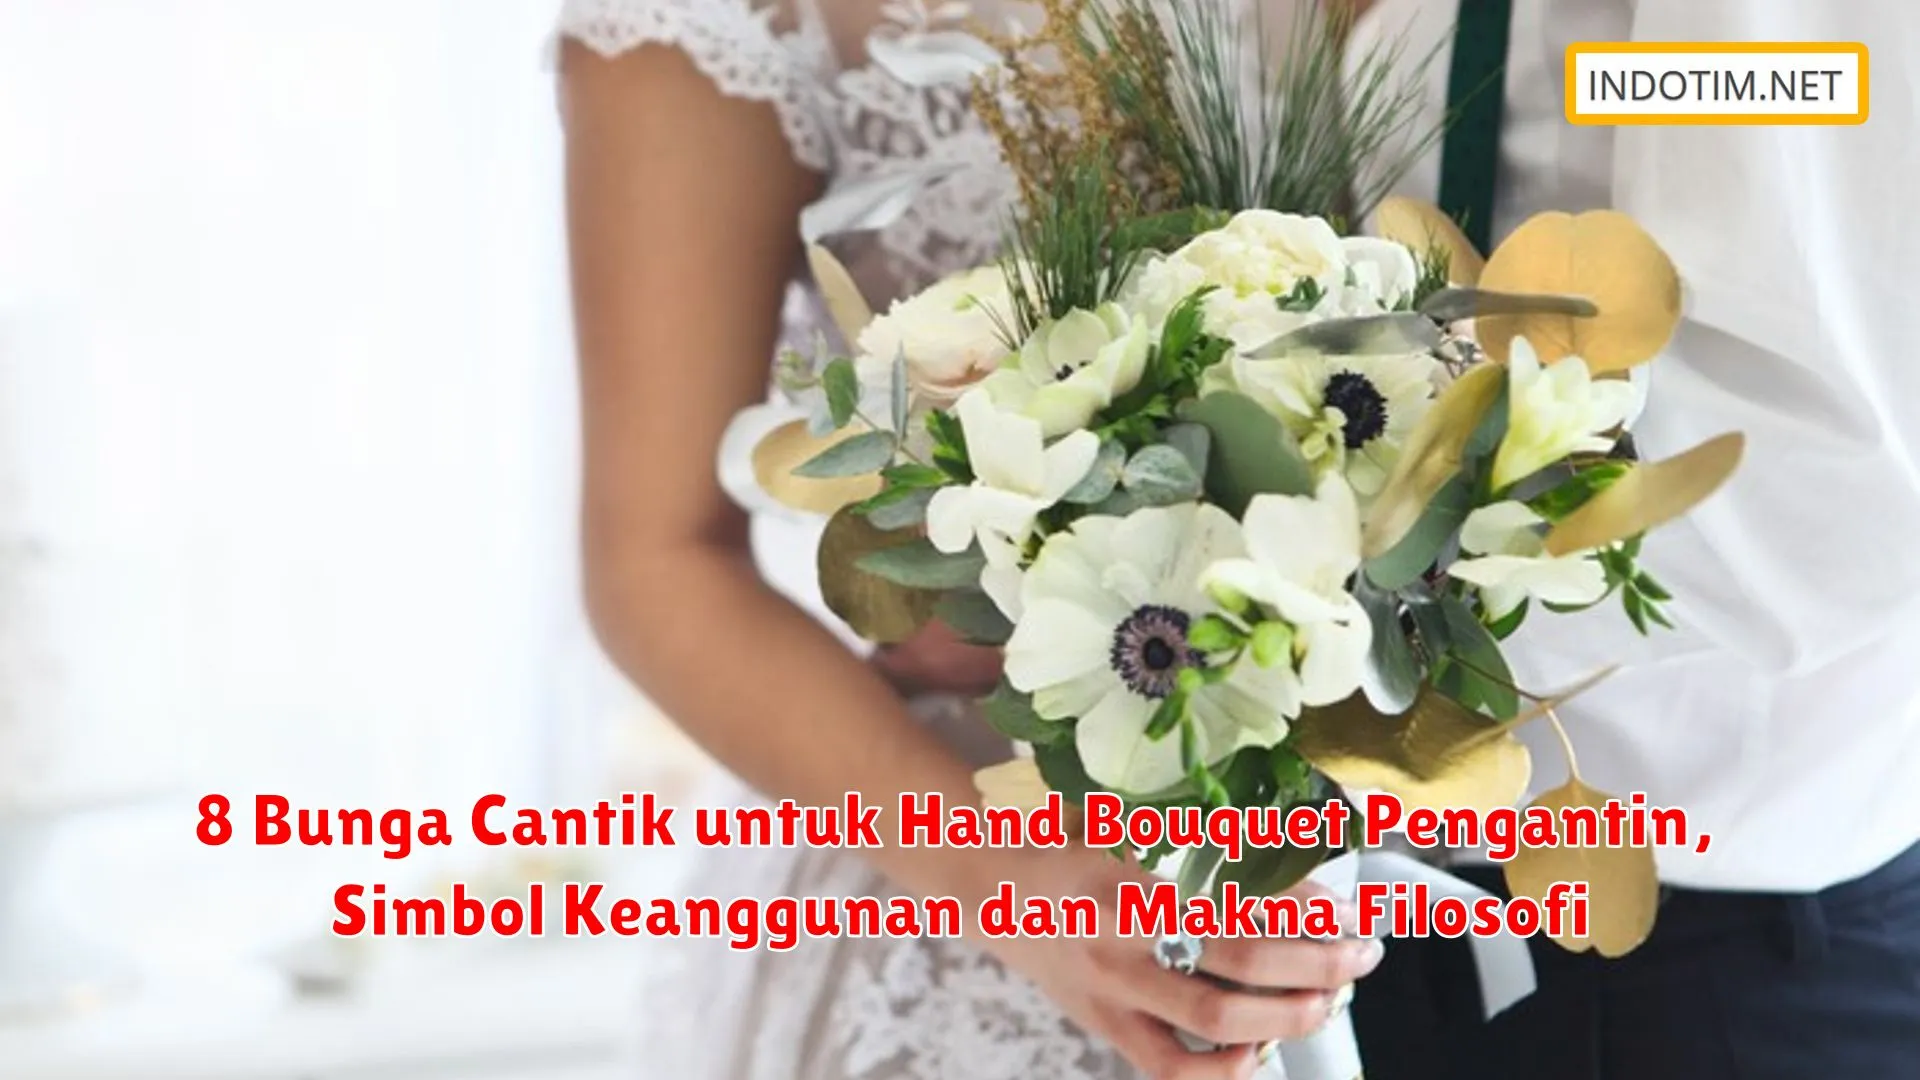 8 Bunga Cantik untuk Hand Bouquet Pengantin, Simbol Keanggunan dan Makna Filosofi